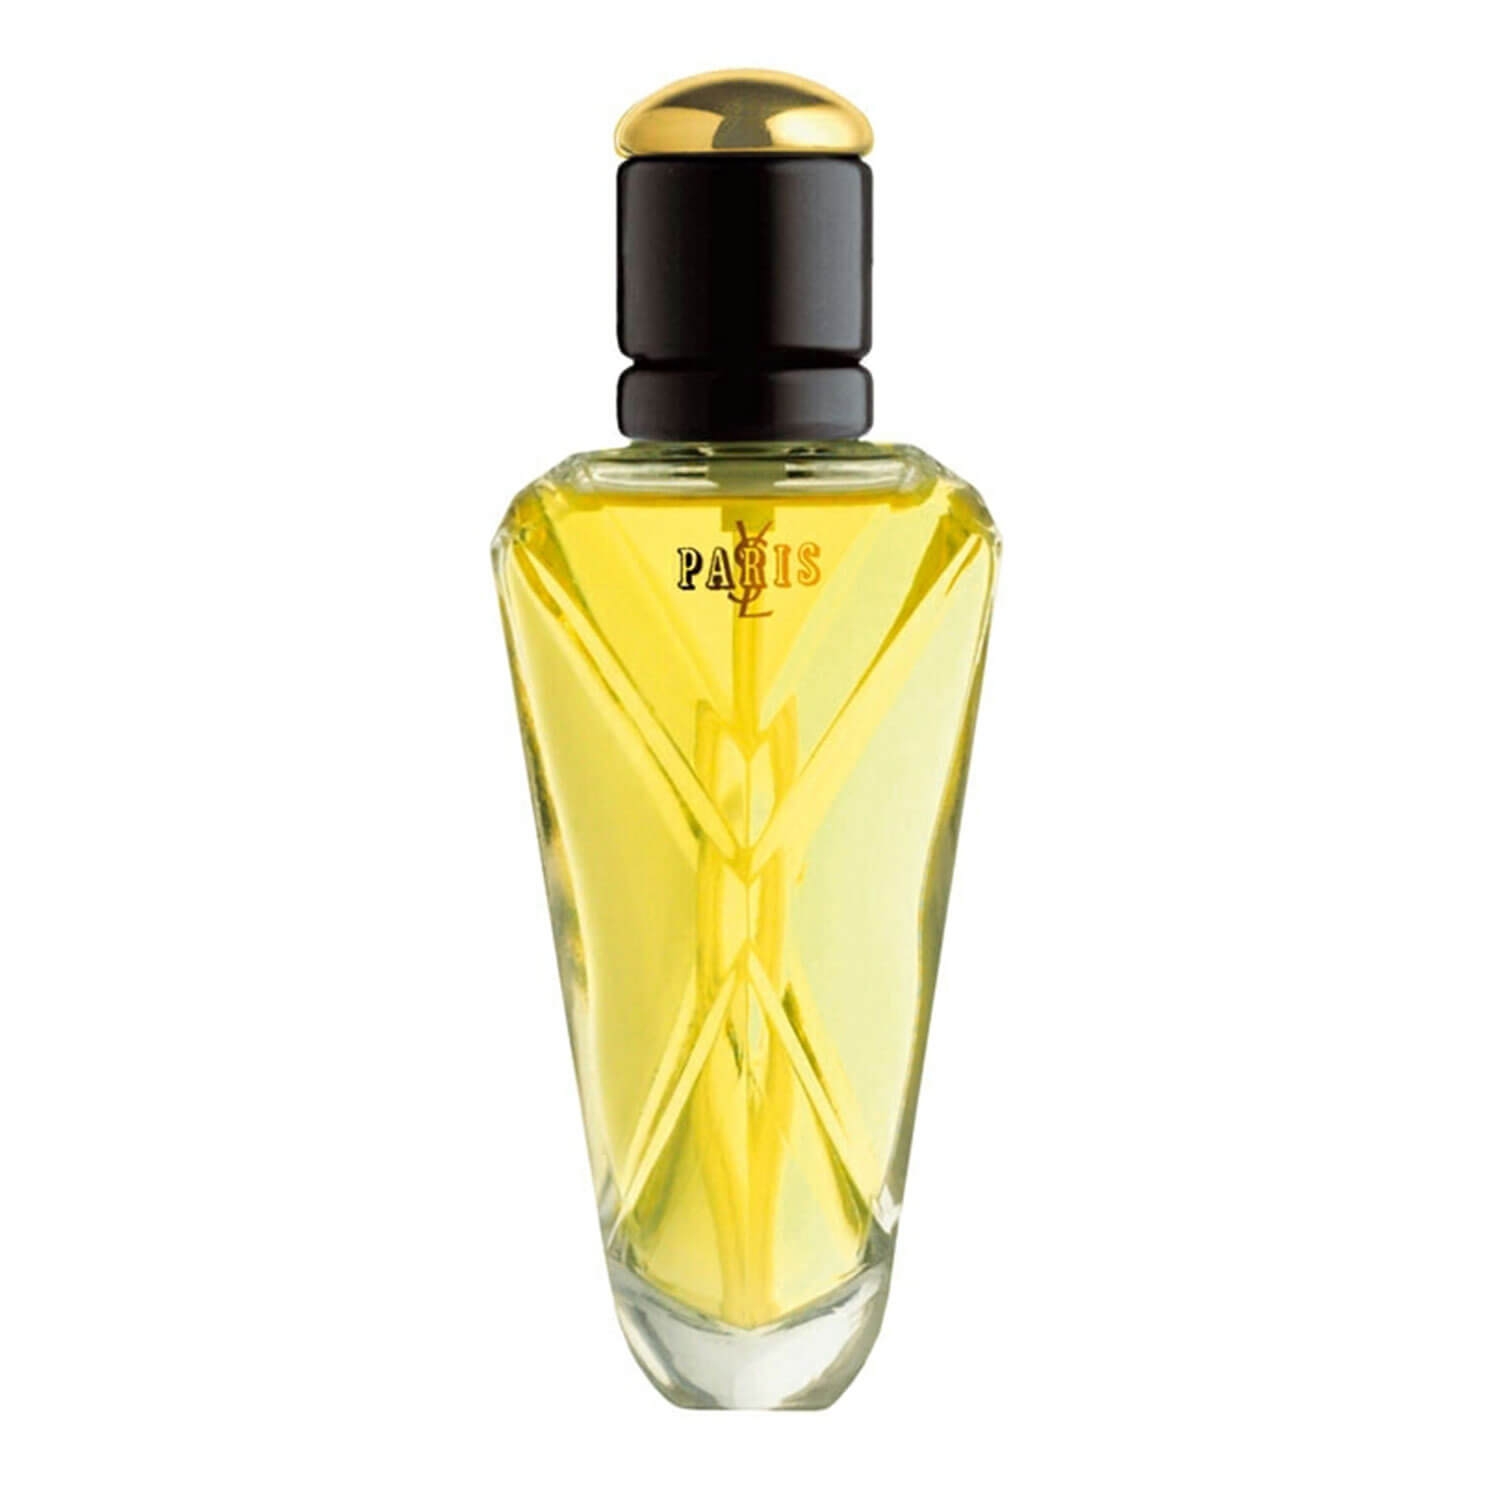 Produktbild von YSL Paris - Eau de Parfum